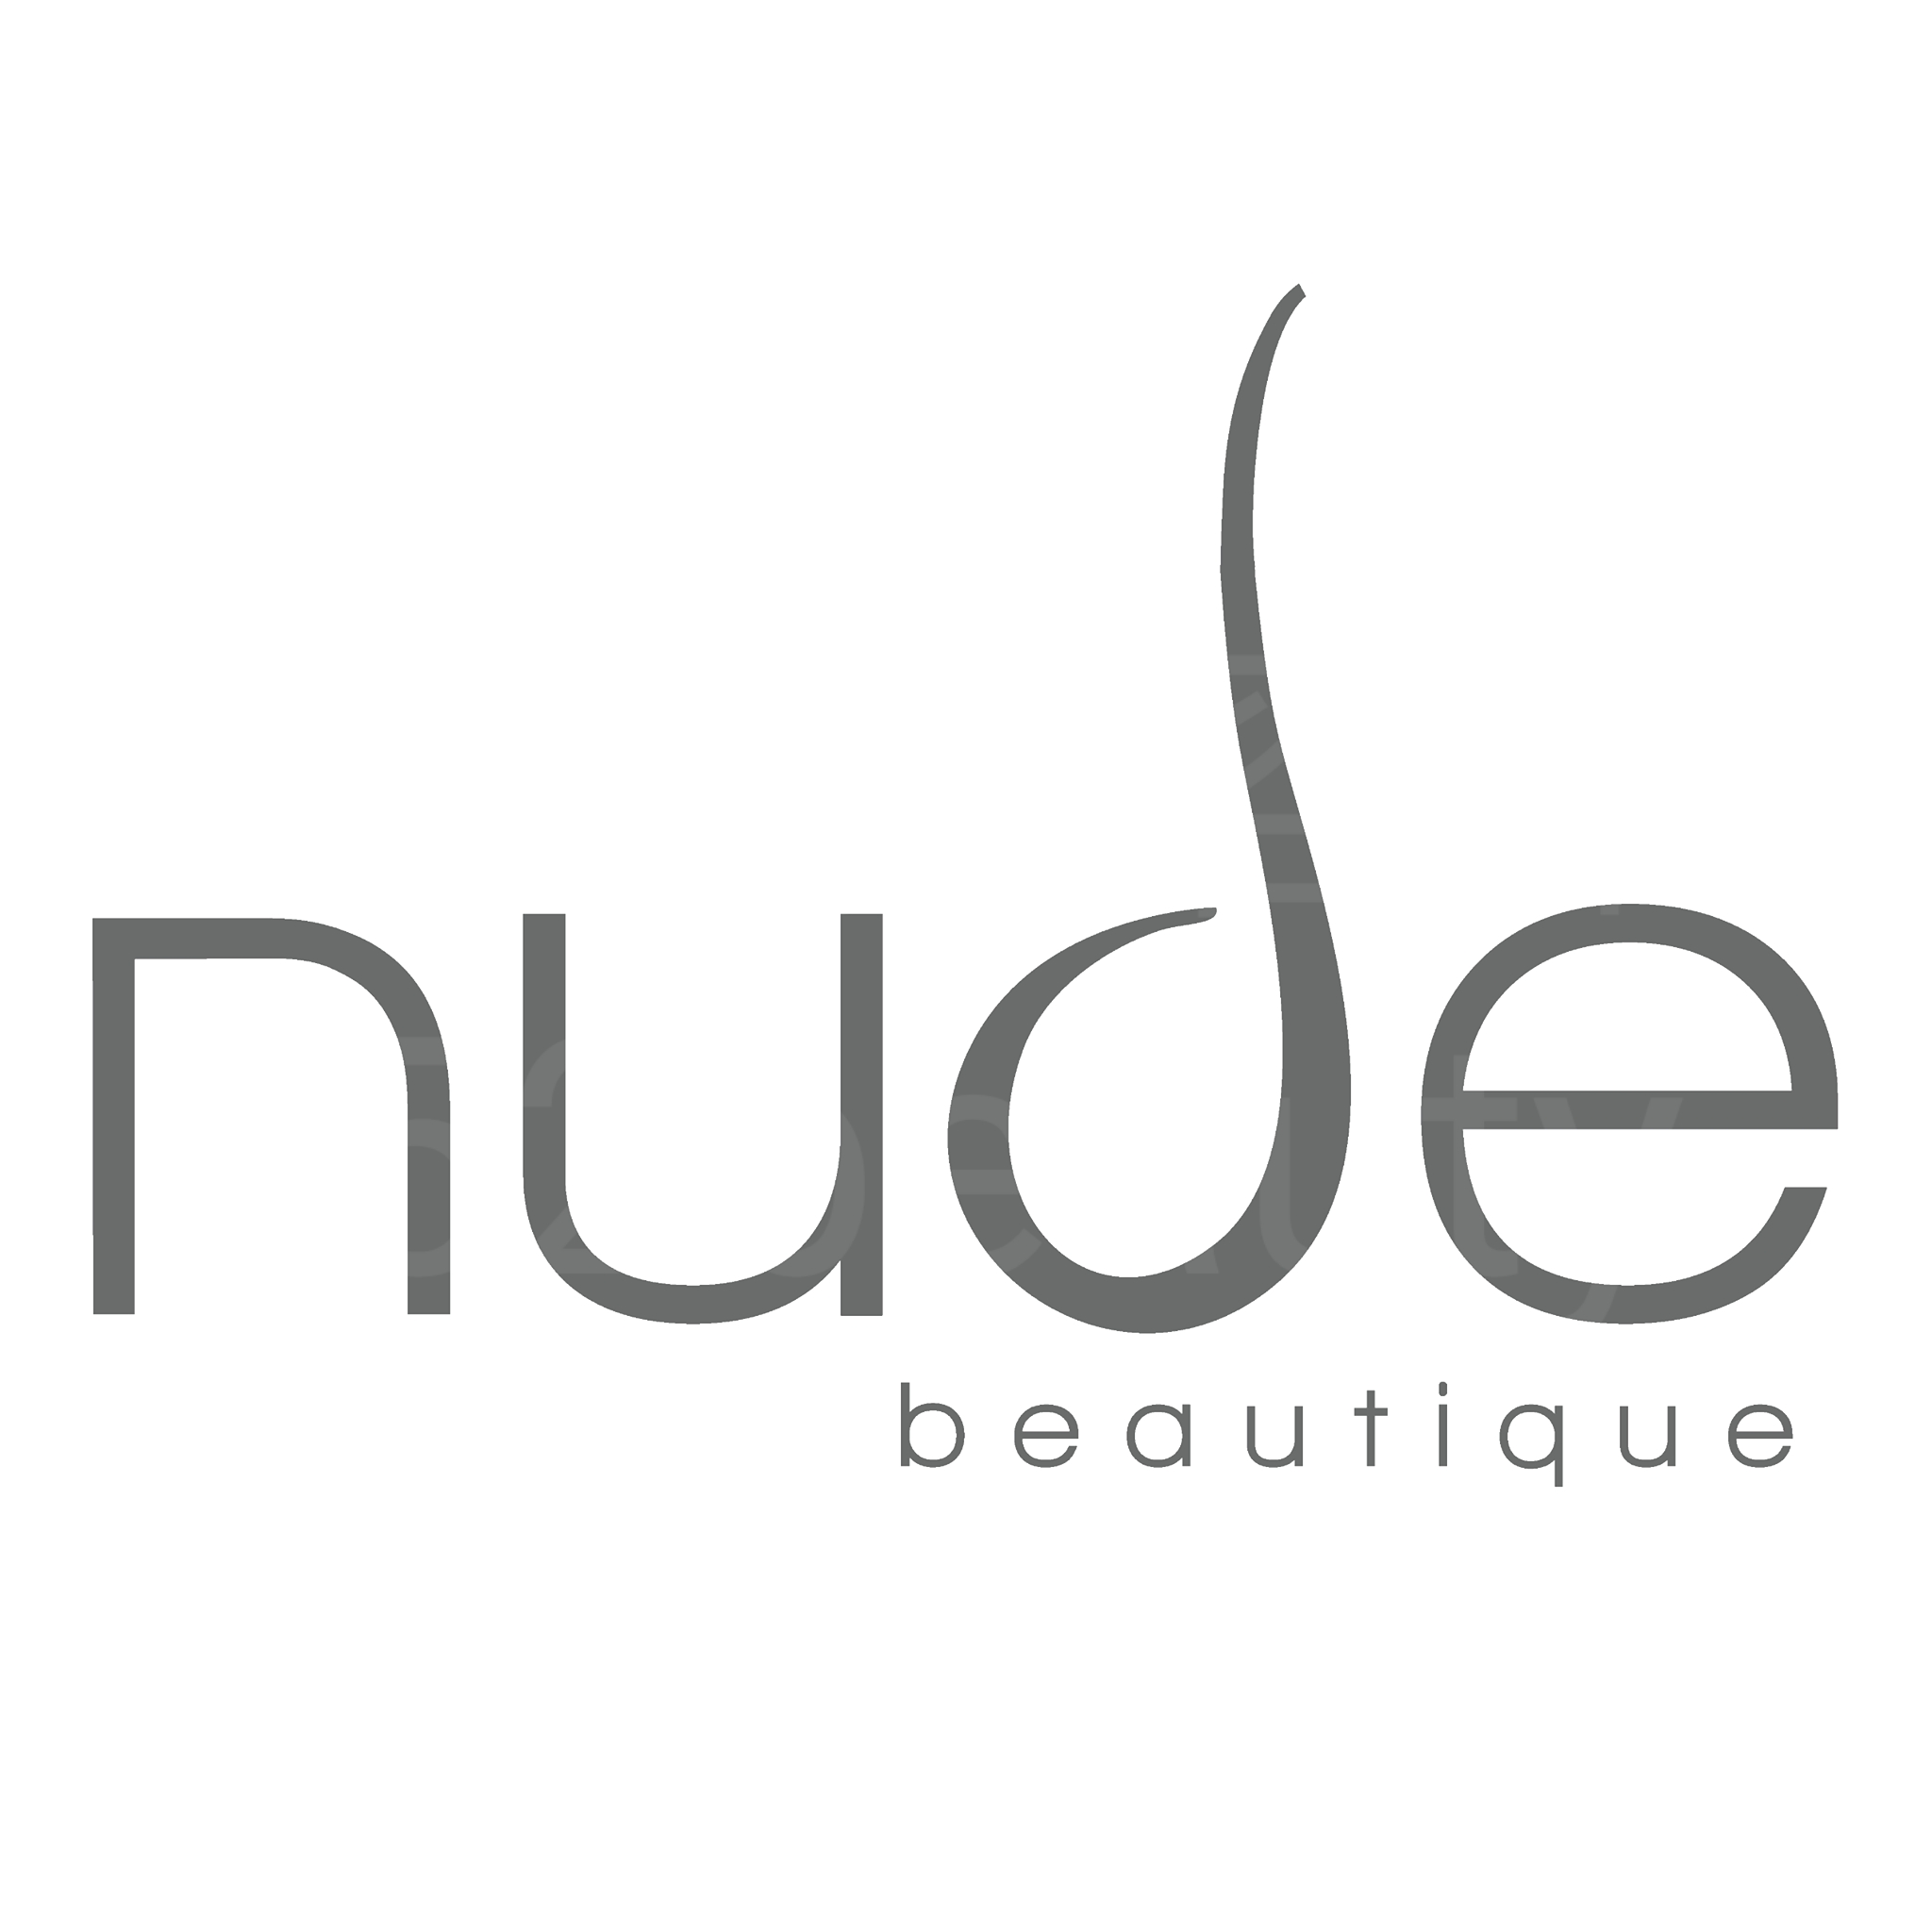 Facial Care: nude beautique (蘭桂芳分店)